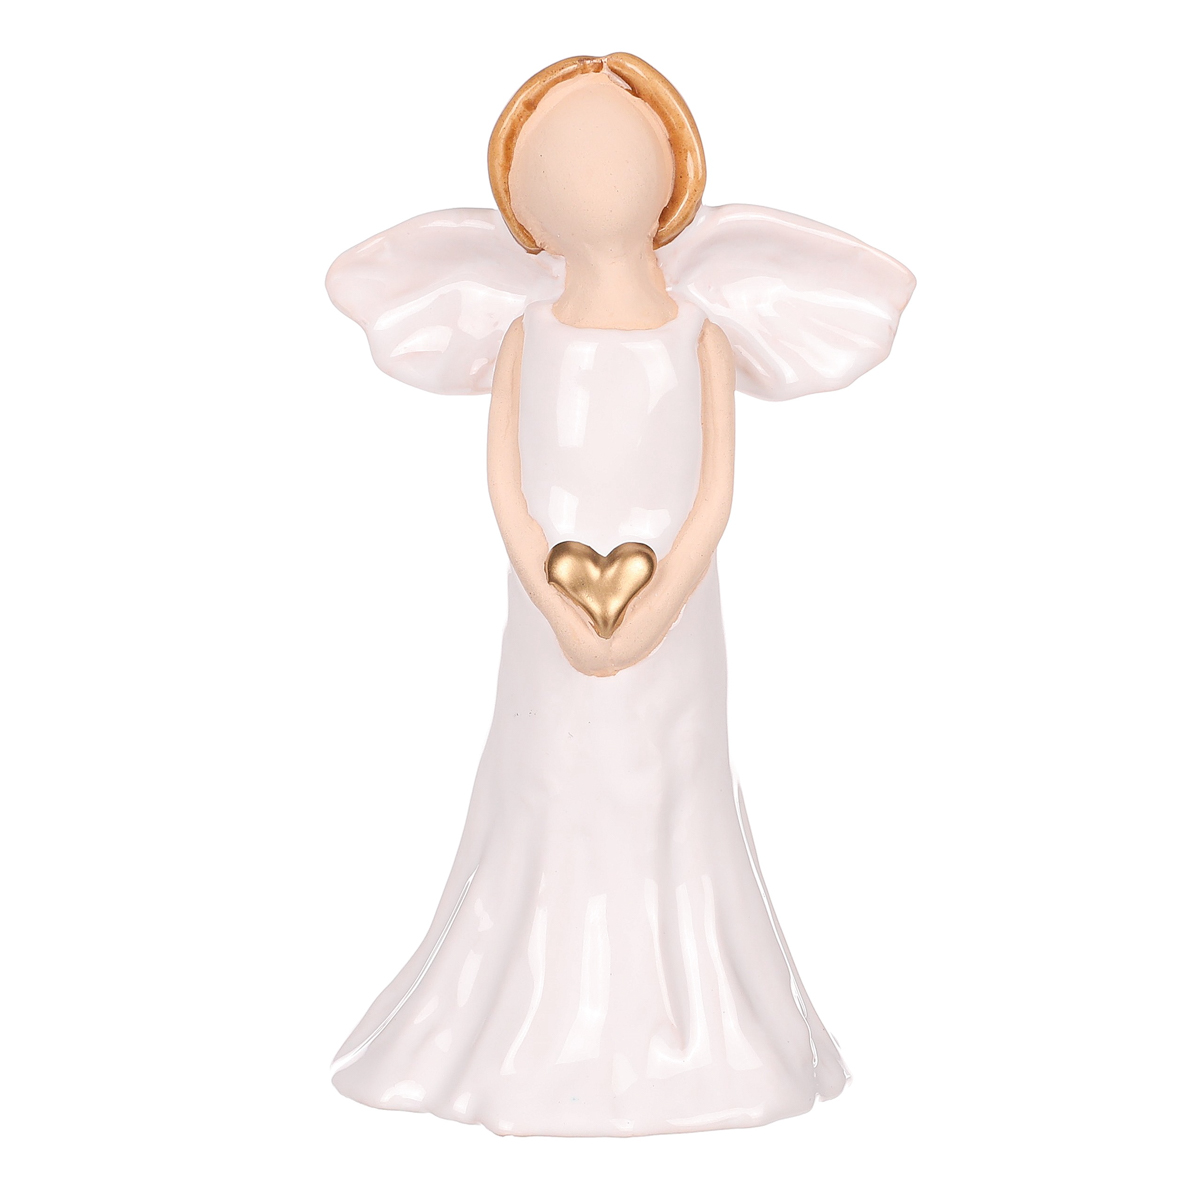 Anděl držící srdce s bílými křídly, keramika